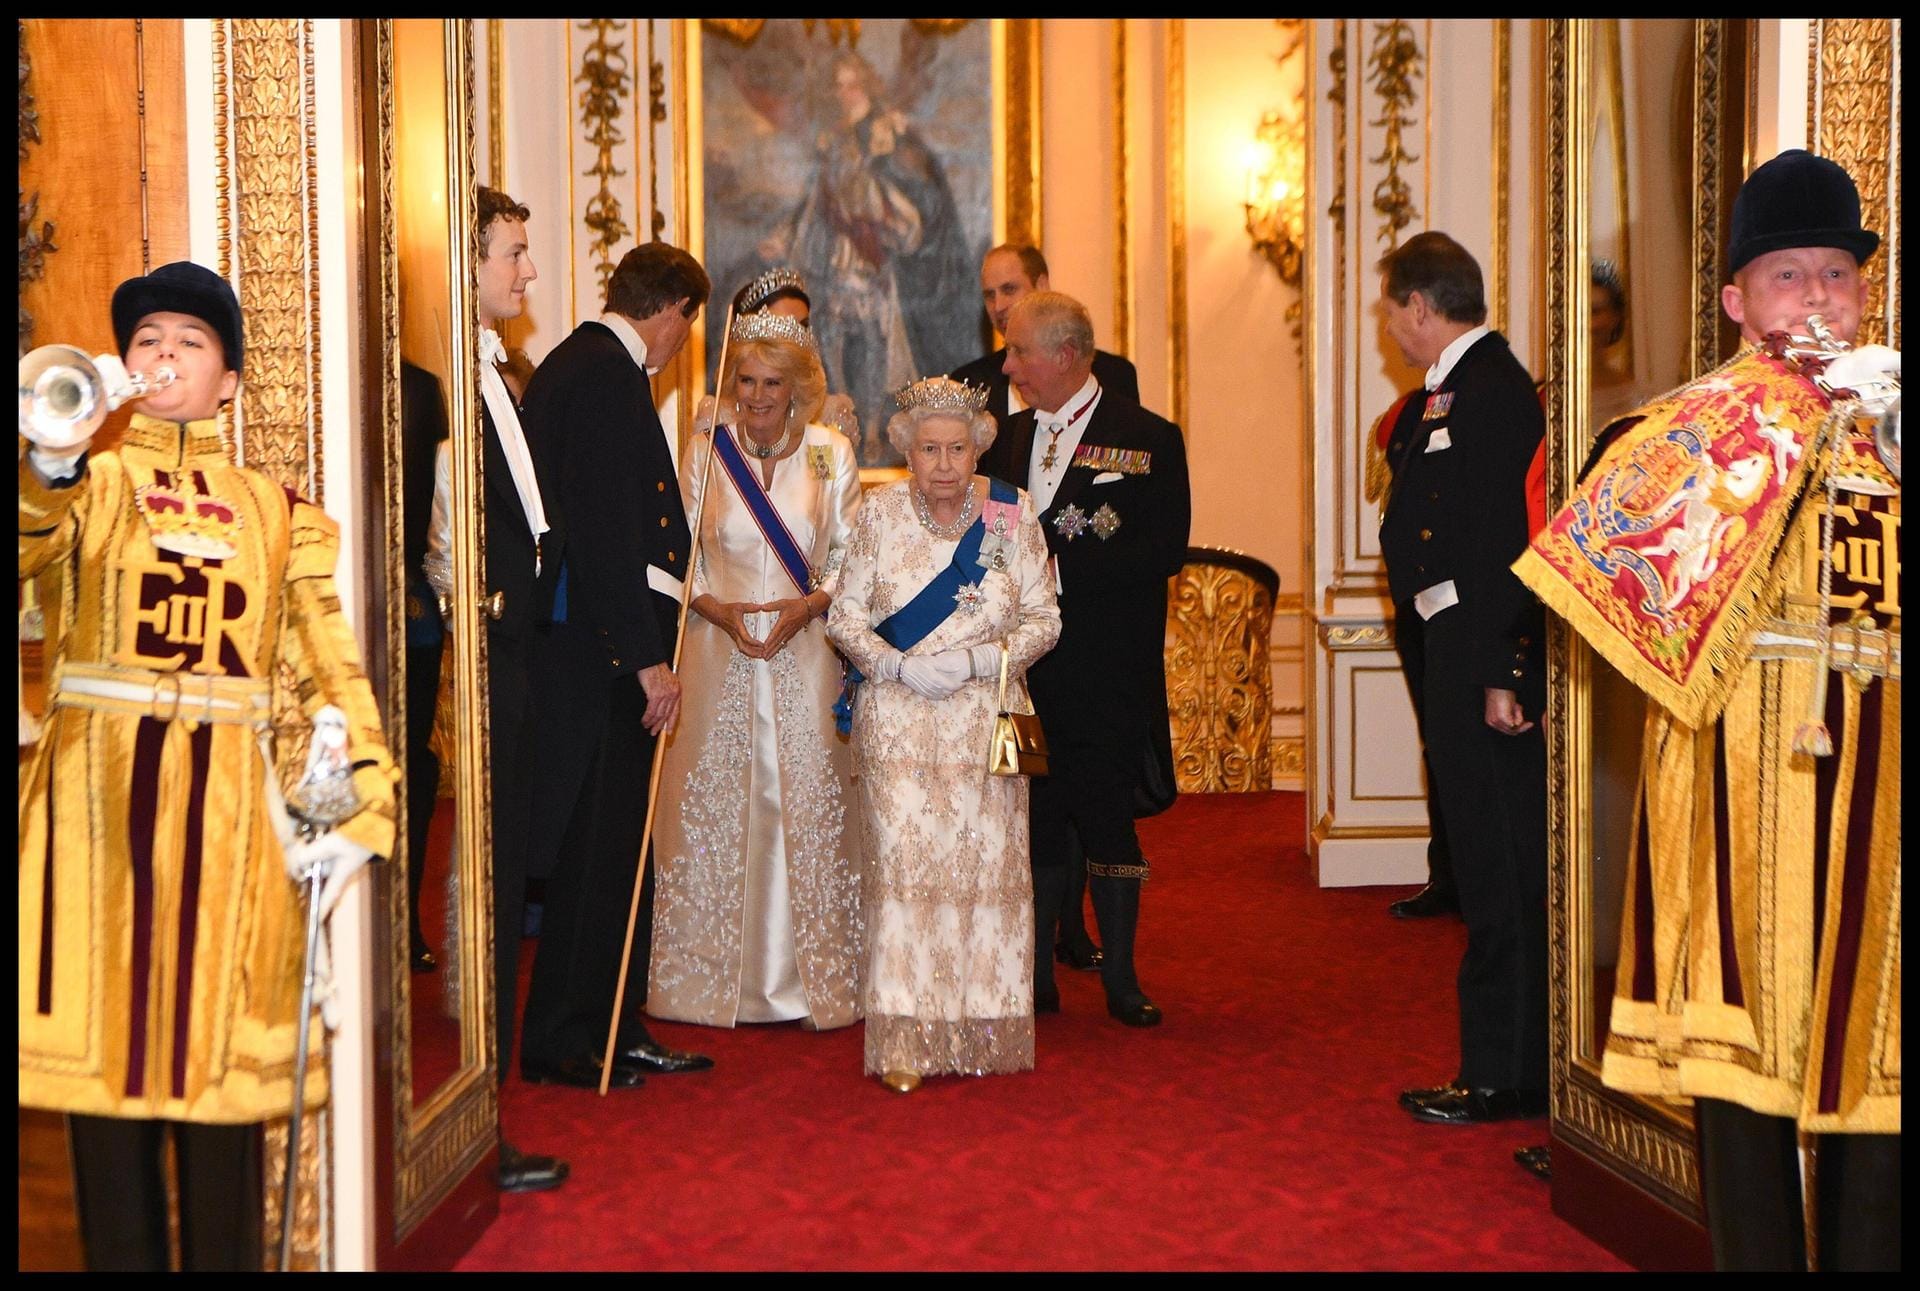 Hier kommt die Queen: Das Oberhaupt der Briten-Royals wählte ebenfalls ein cremefarbenes Kleid, genau wie ihre Schwiegertochter Camilla.